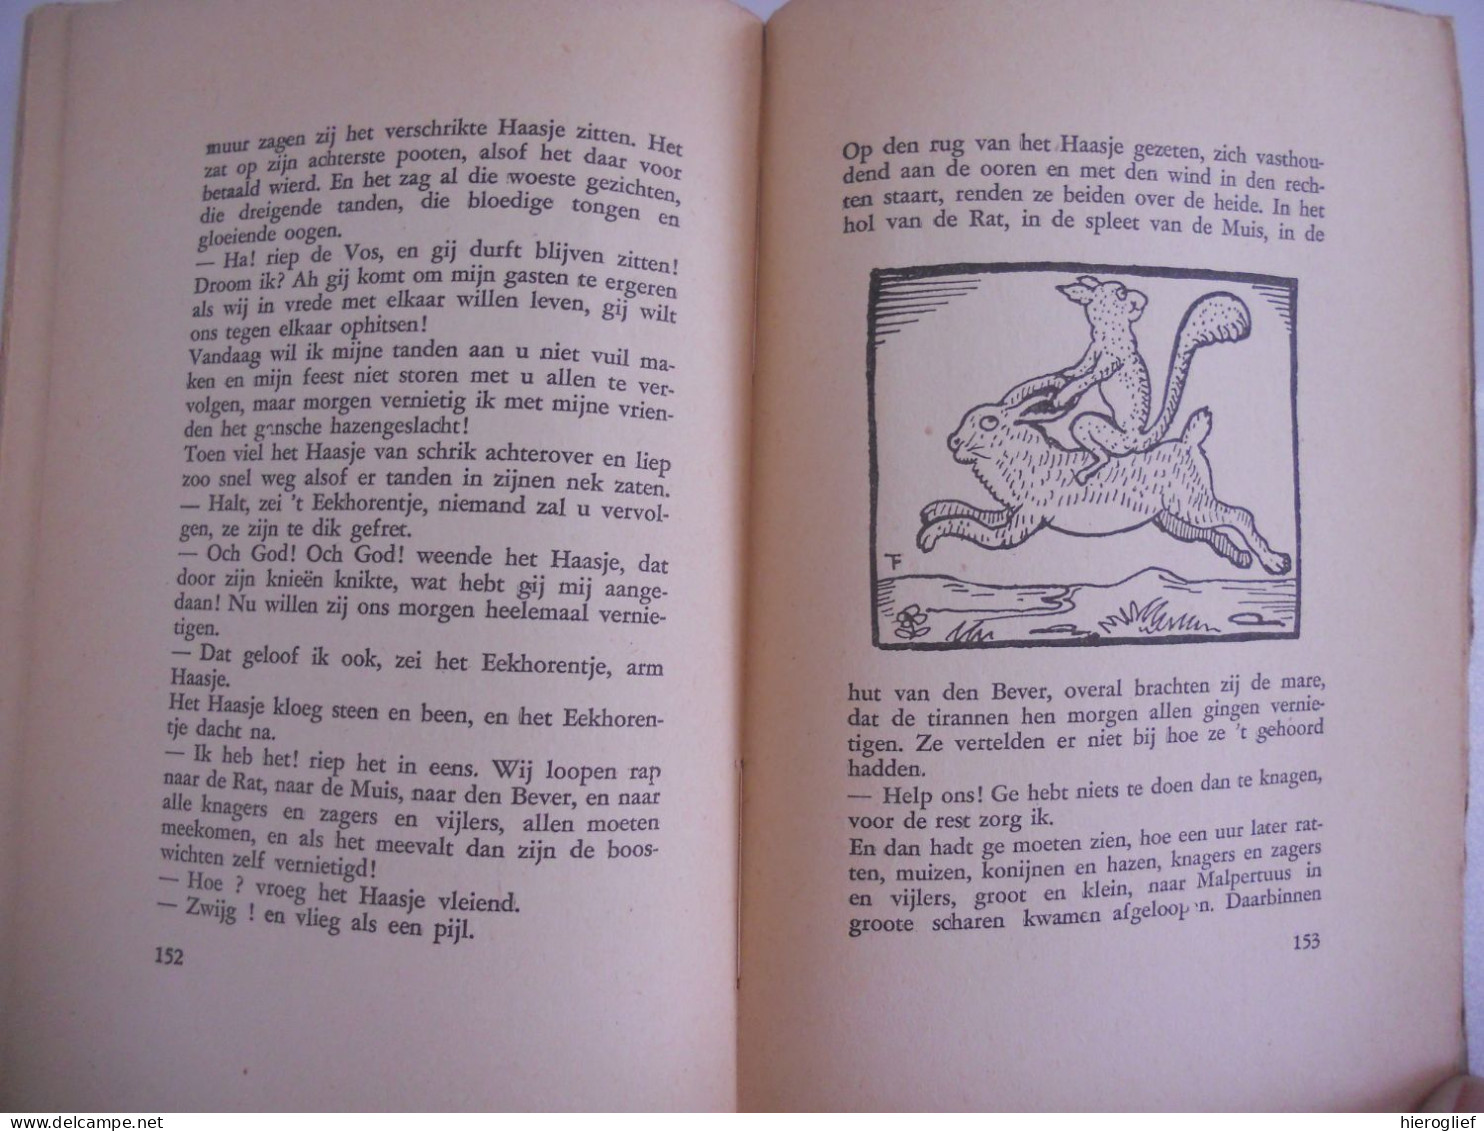 PIJP En TOEBAK Door FELIX TIMMERMANS 1933 - Lier / Tabak Illustraties Door Timmermans Zelf - Literatuur